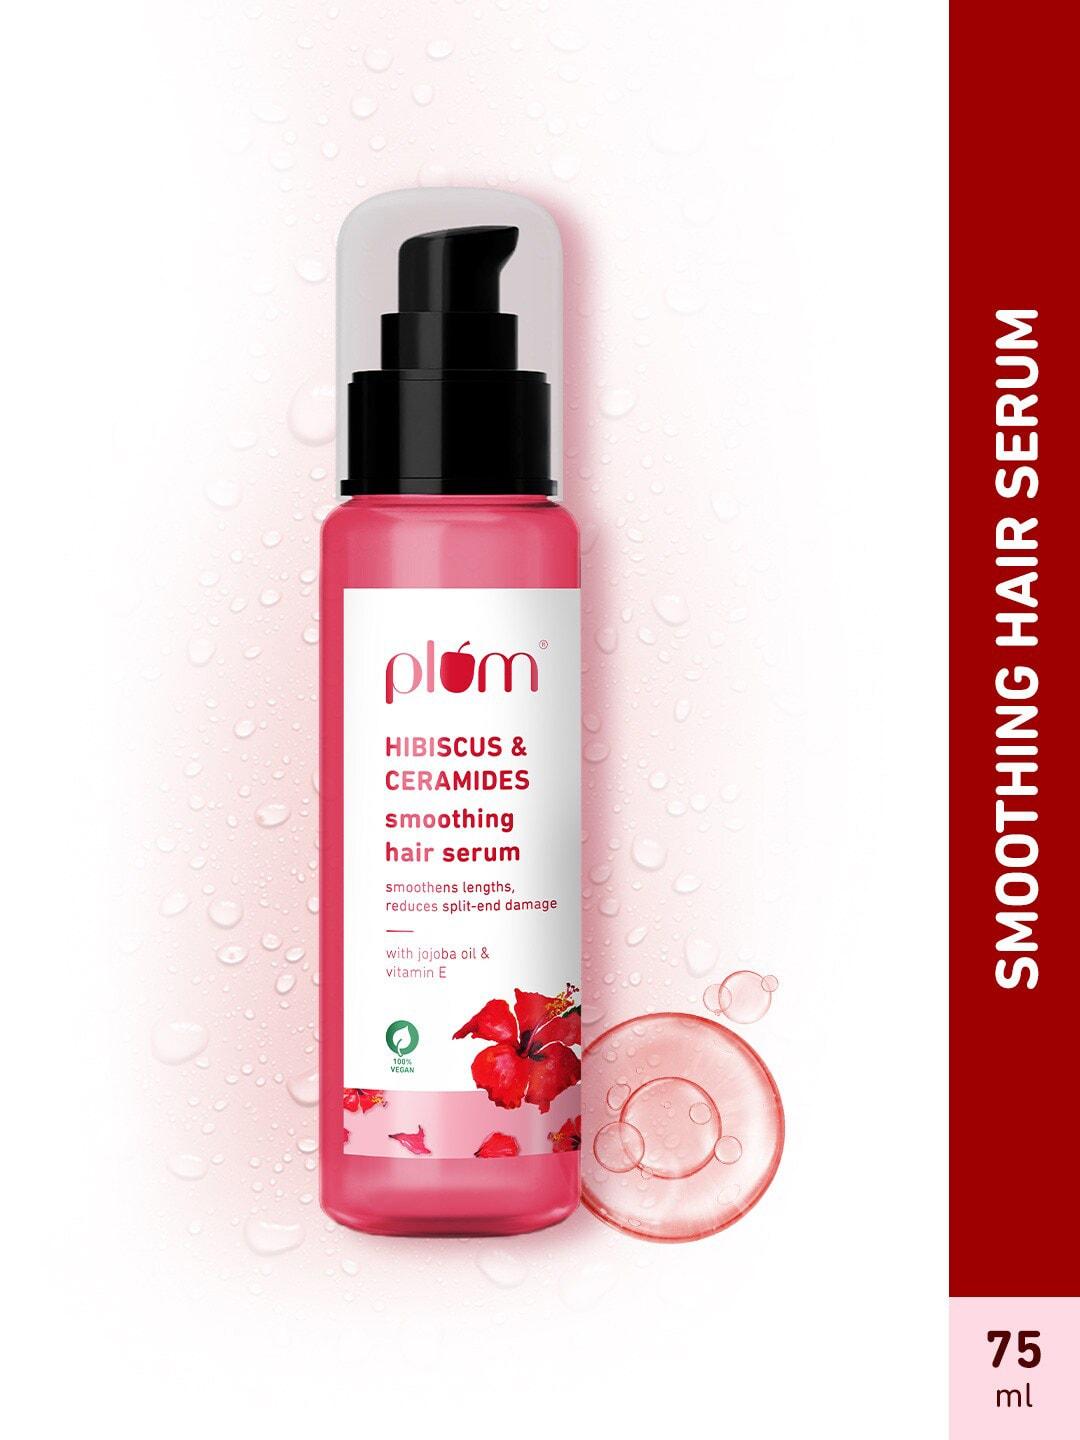 plum-hibiscus-&-ceramides-smoothing-hair-serum-with-vitamin-e---75-ml